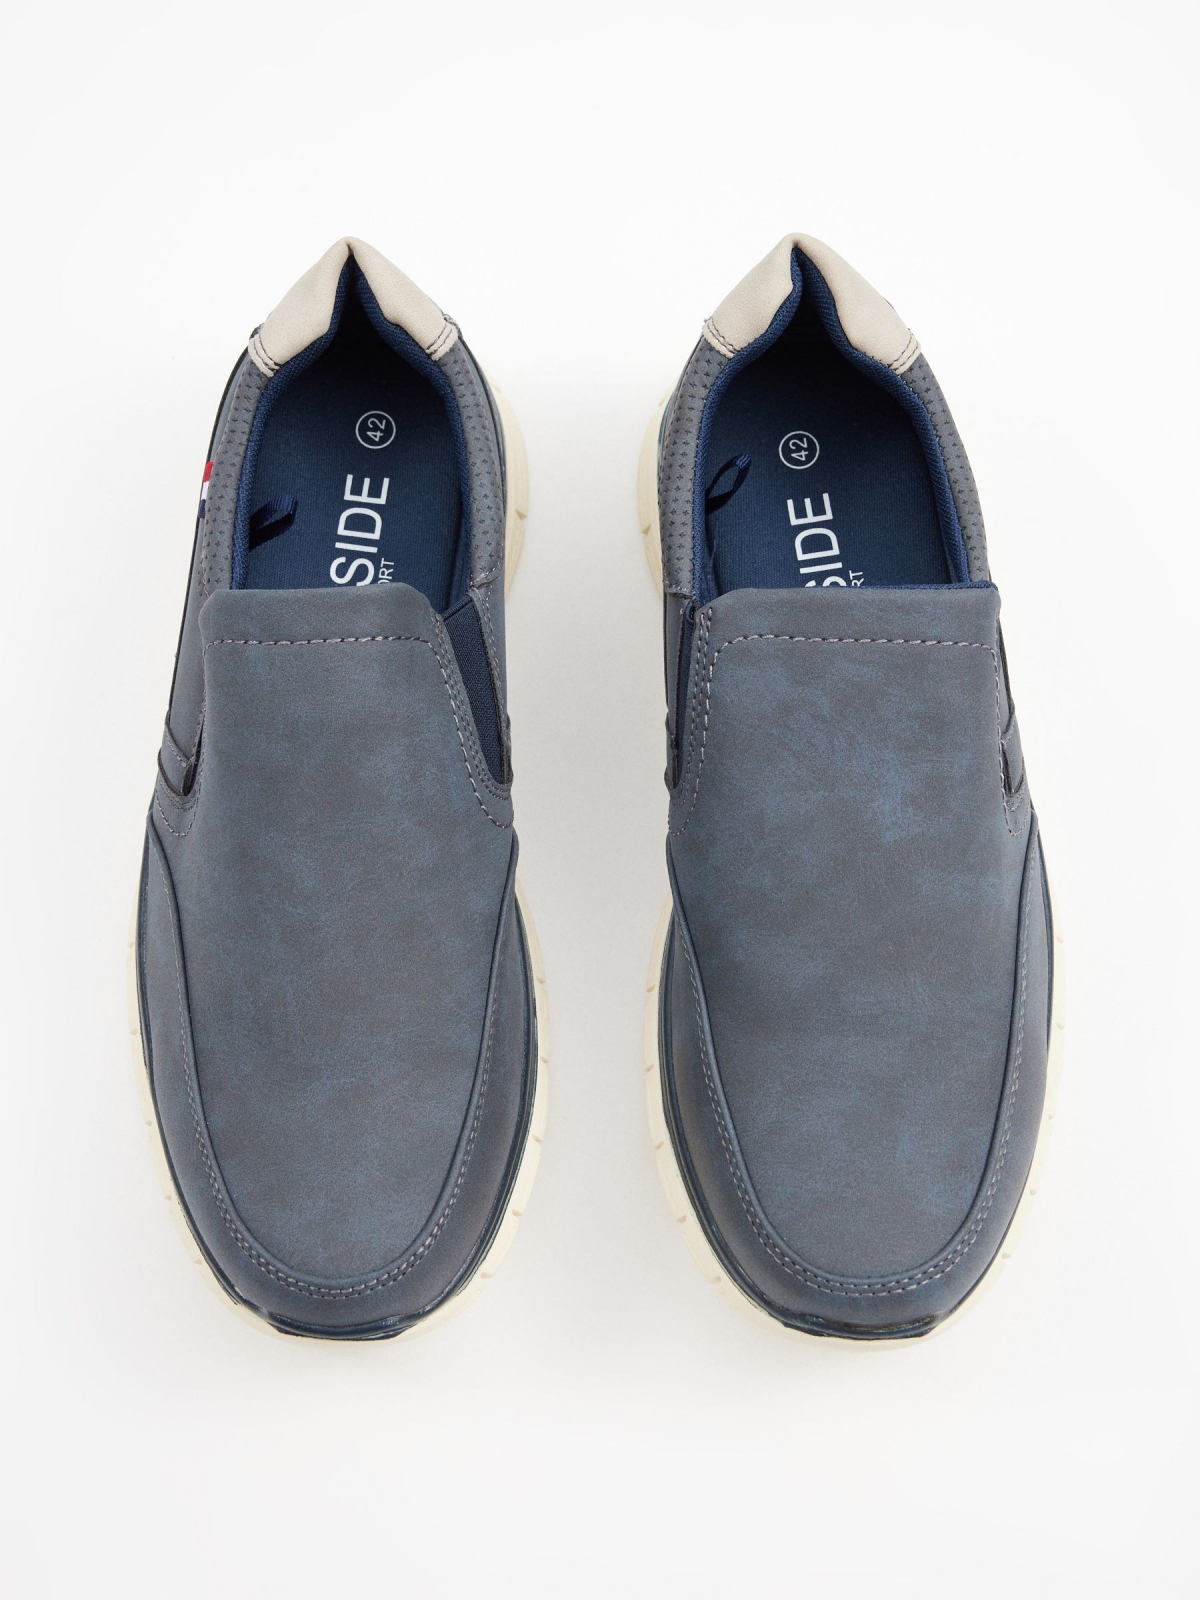 Clássico sapato elástico mocassin azul marinho vista superior